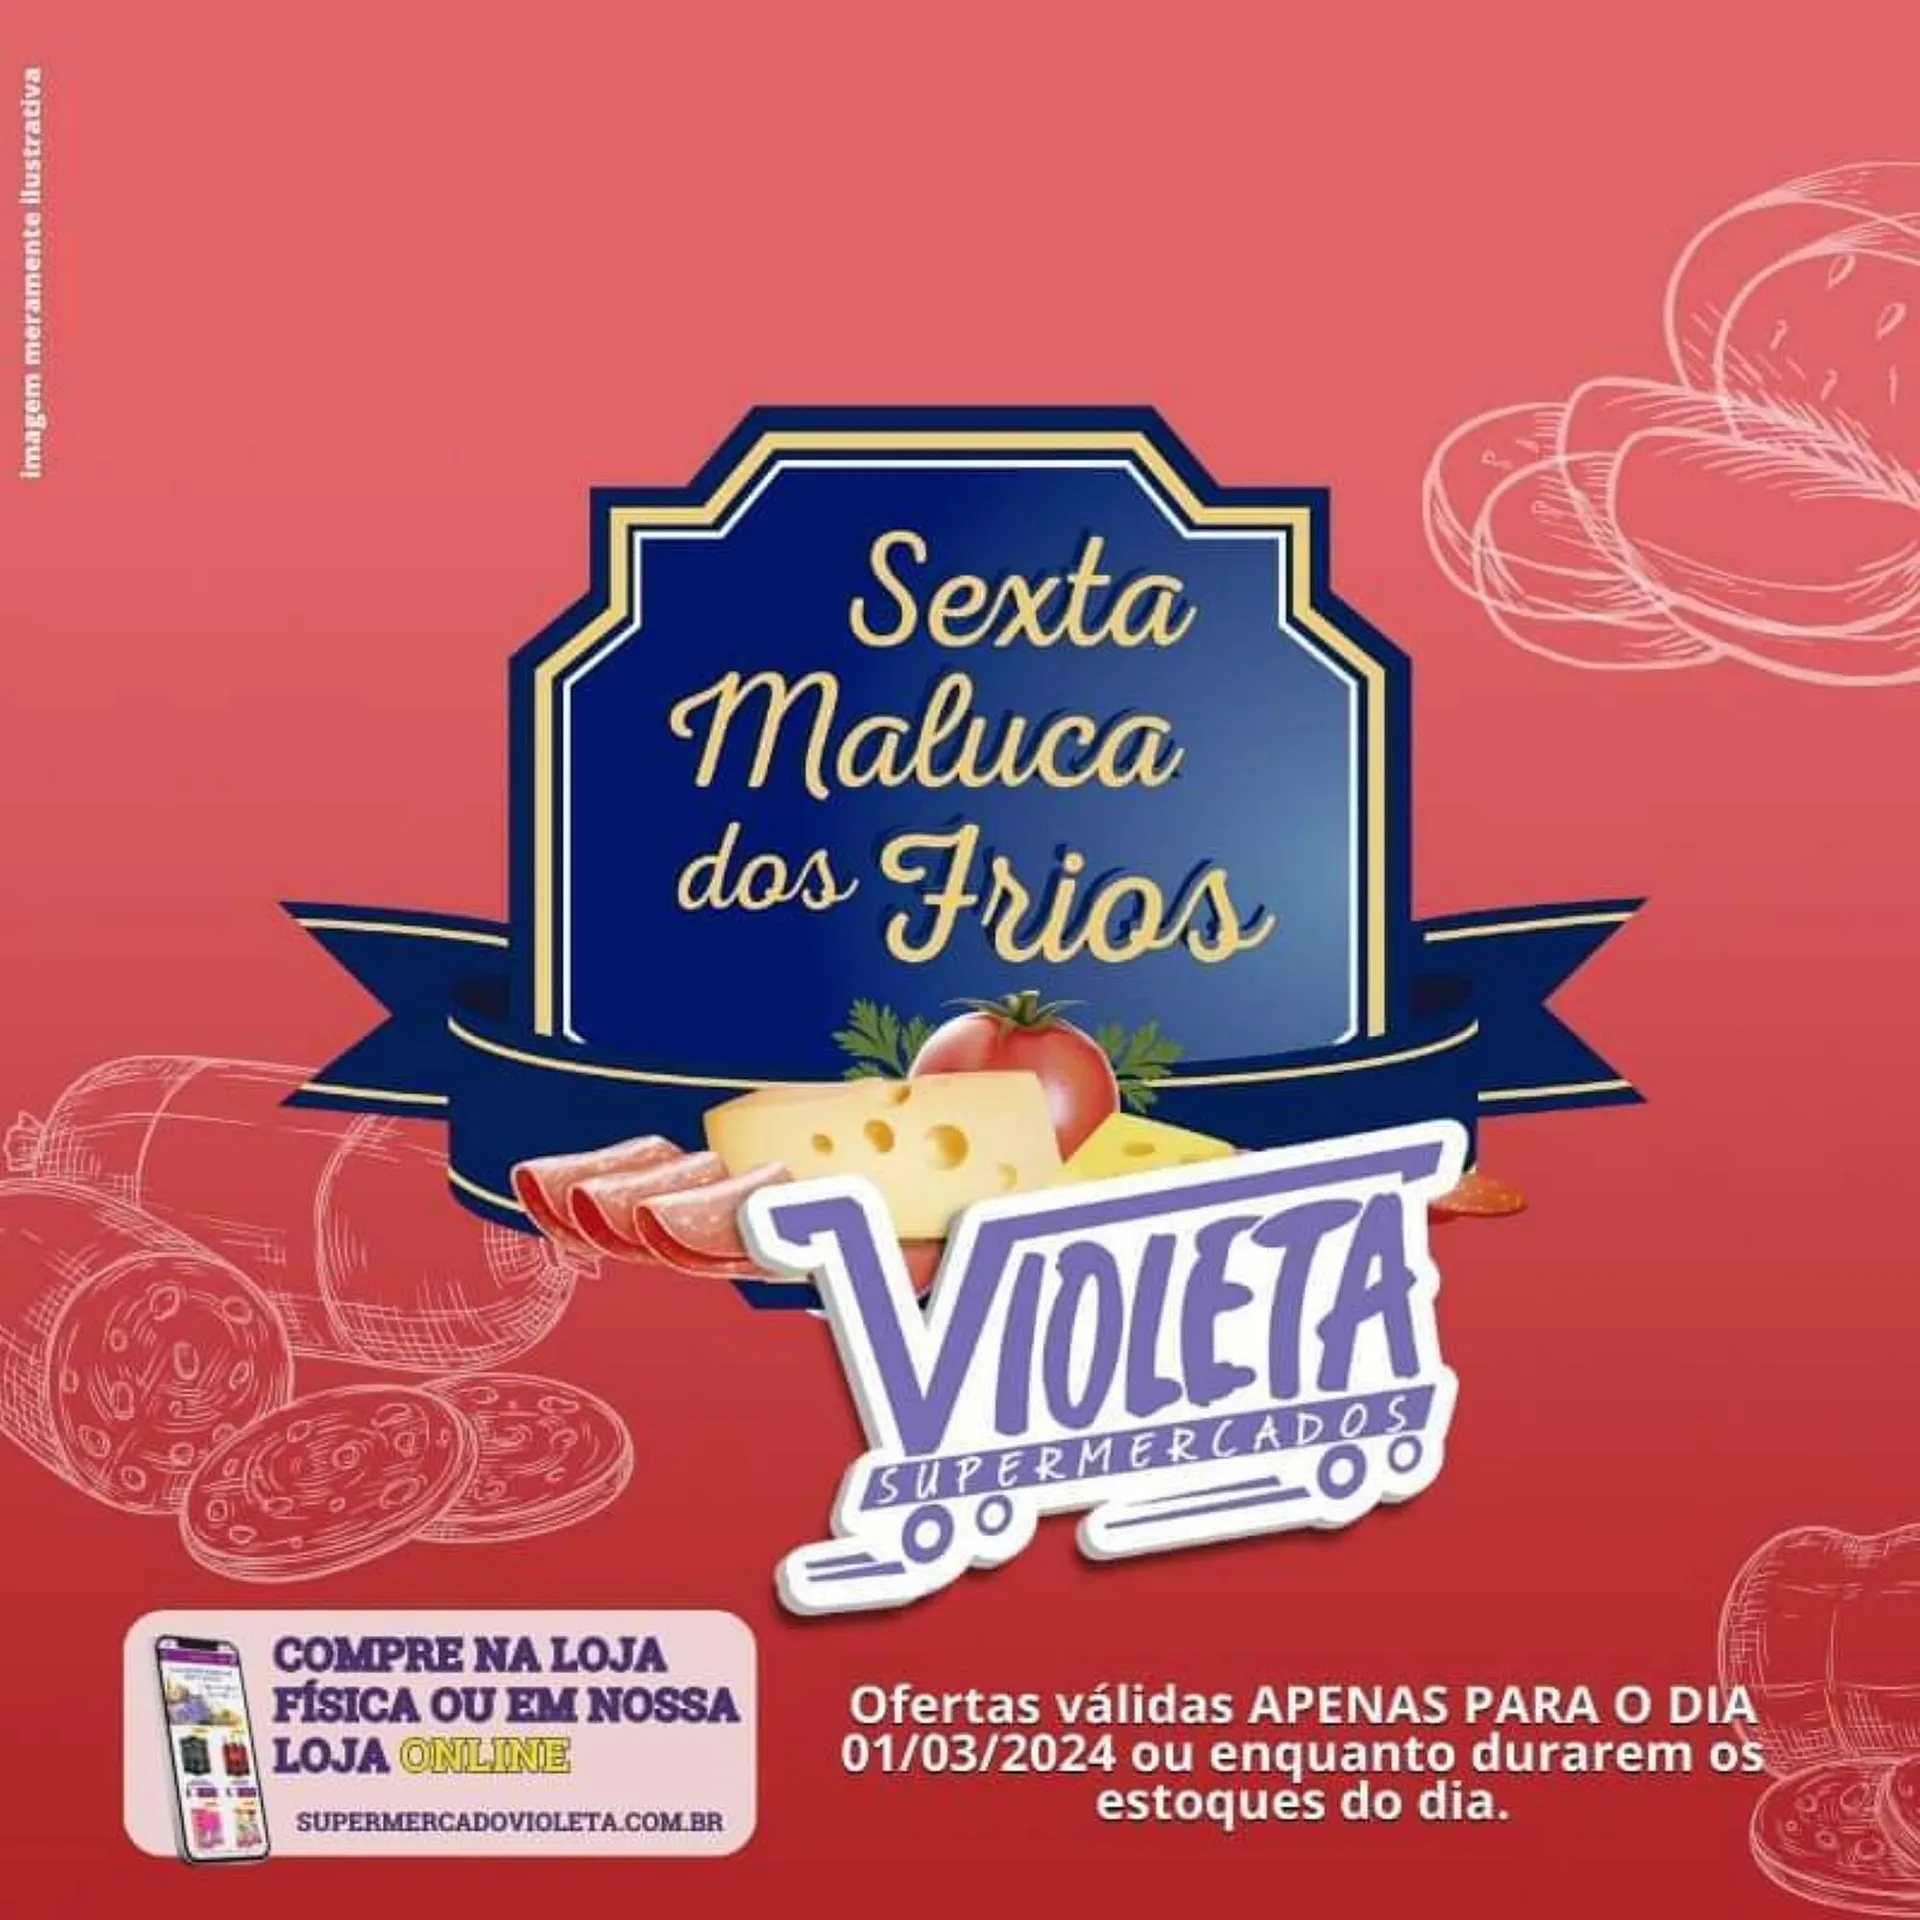 Encarte de Catálogo Violeta Supermercados 29 de fevereiro até 1 de março 2024 - Pagina 